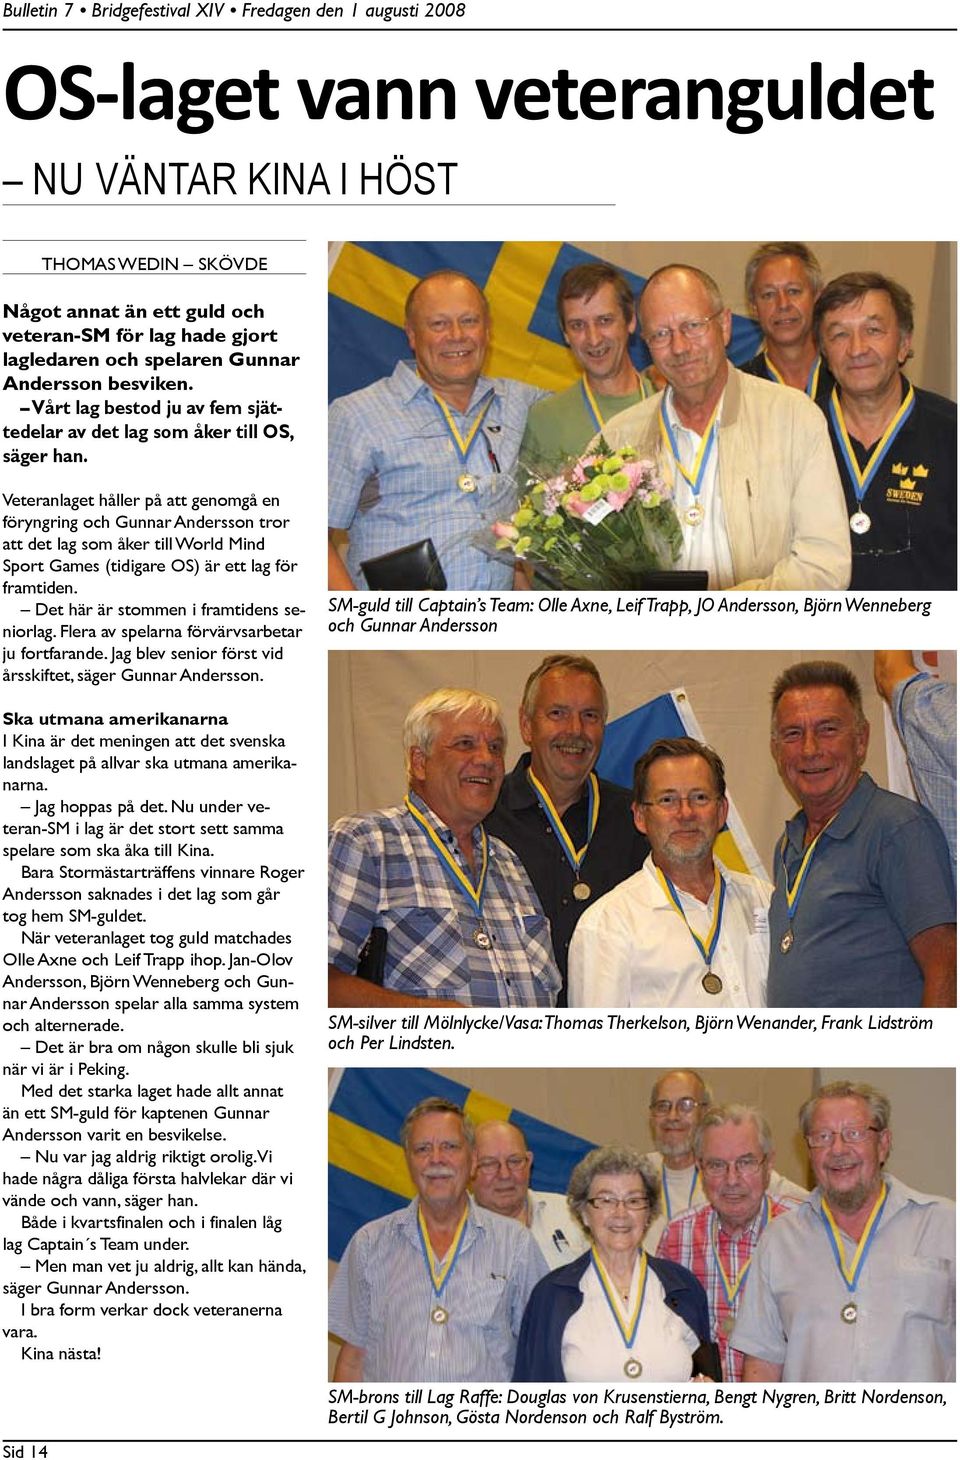 Veteranlaget håller på att genomgå en föryngring och Gunnar Andersson tror att det lag som åker till World Mind Sport Games (tidigare OS) är ett lag för framtiden.